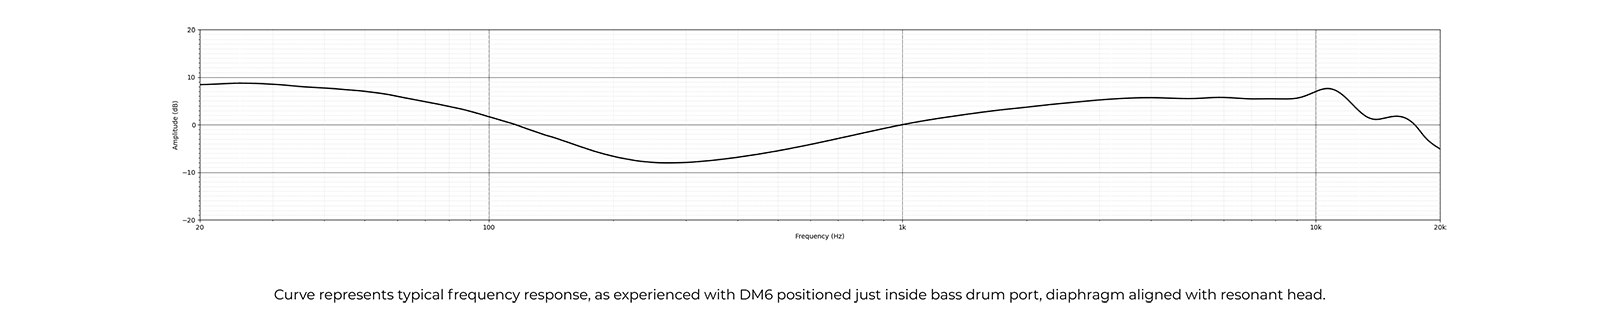 EarthworksDM6の周波数特性